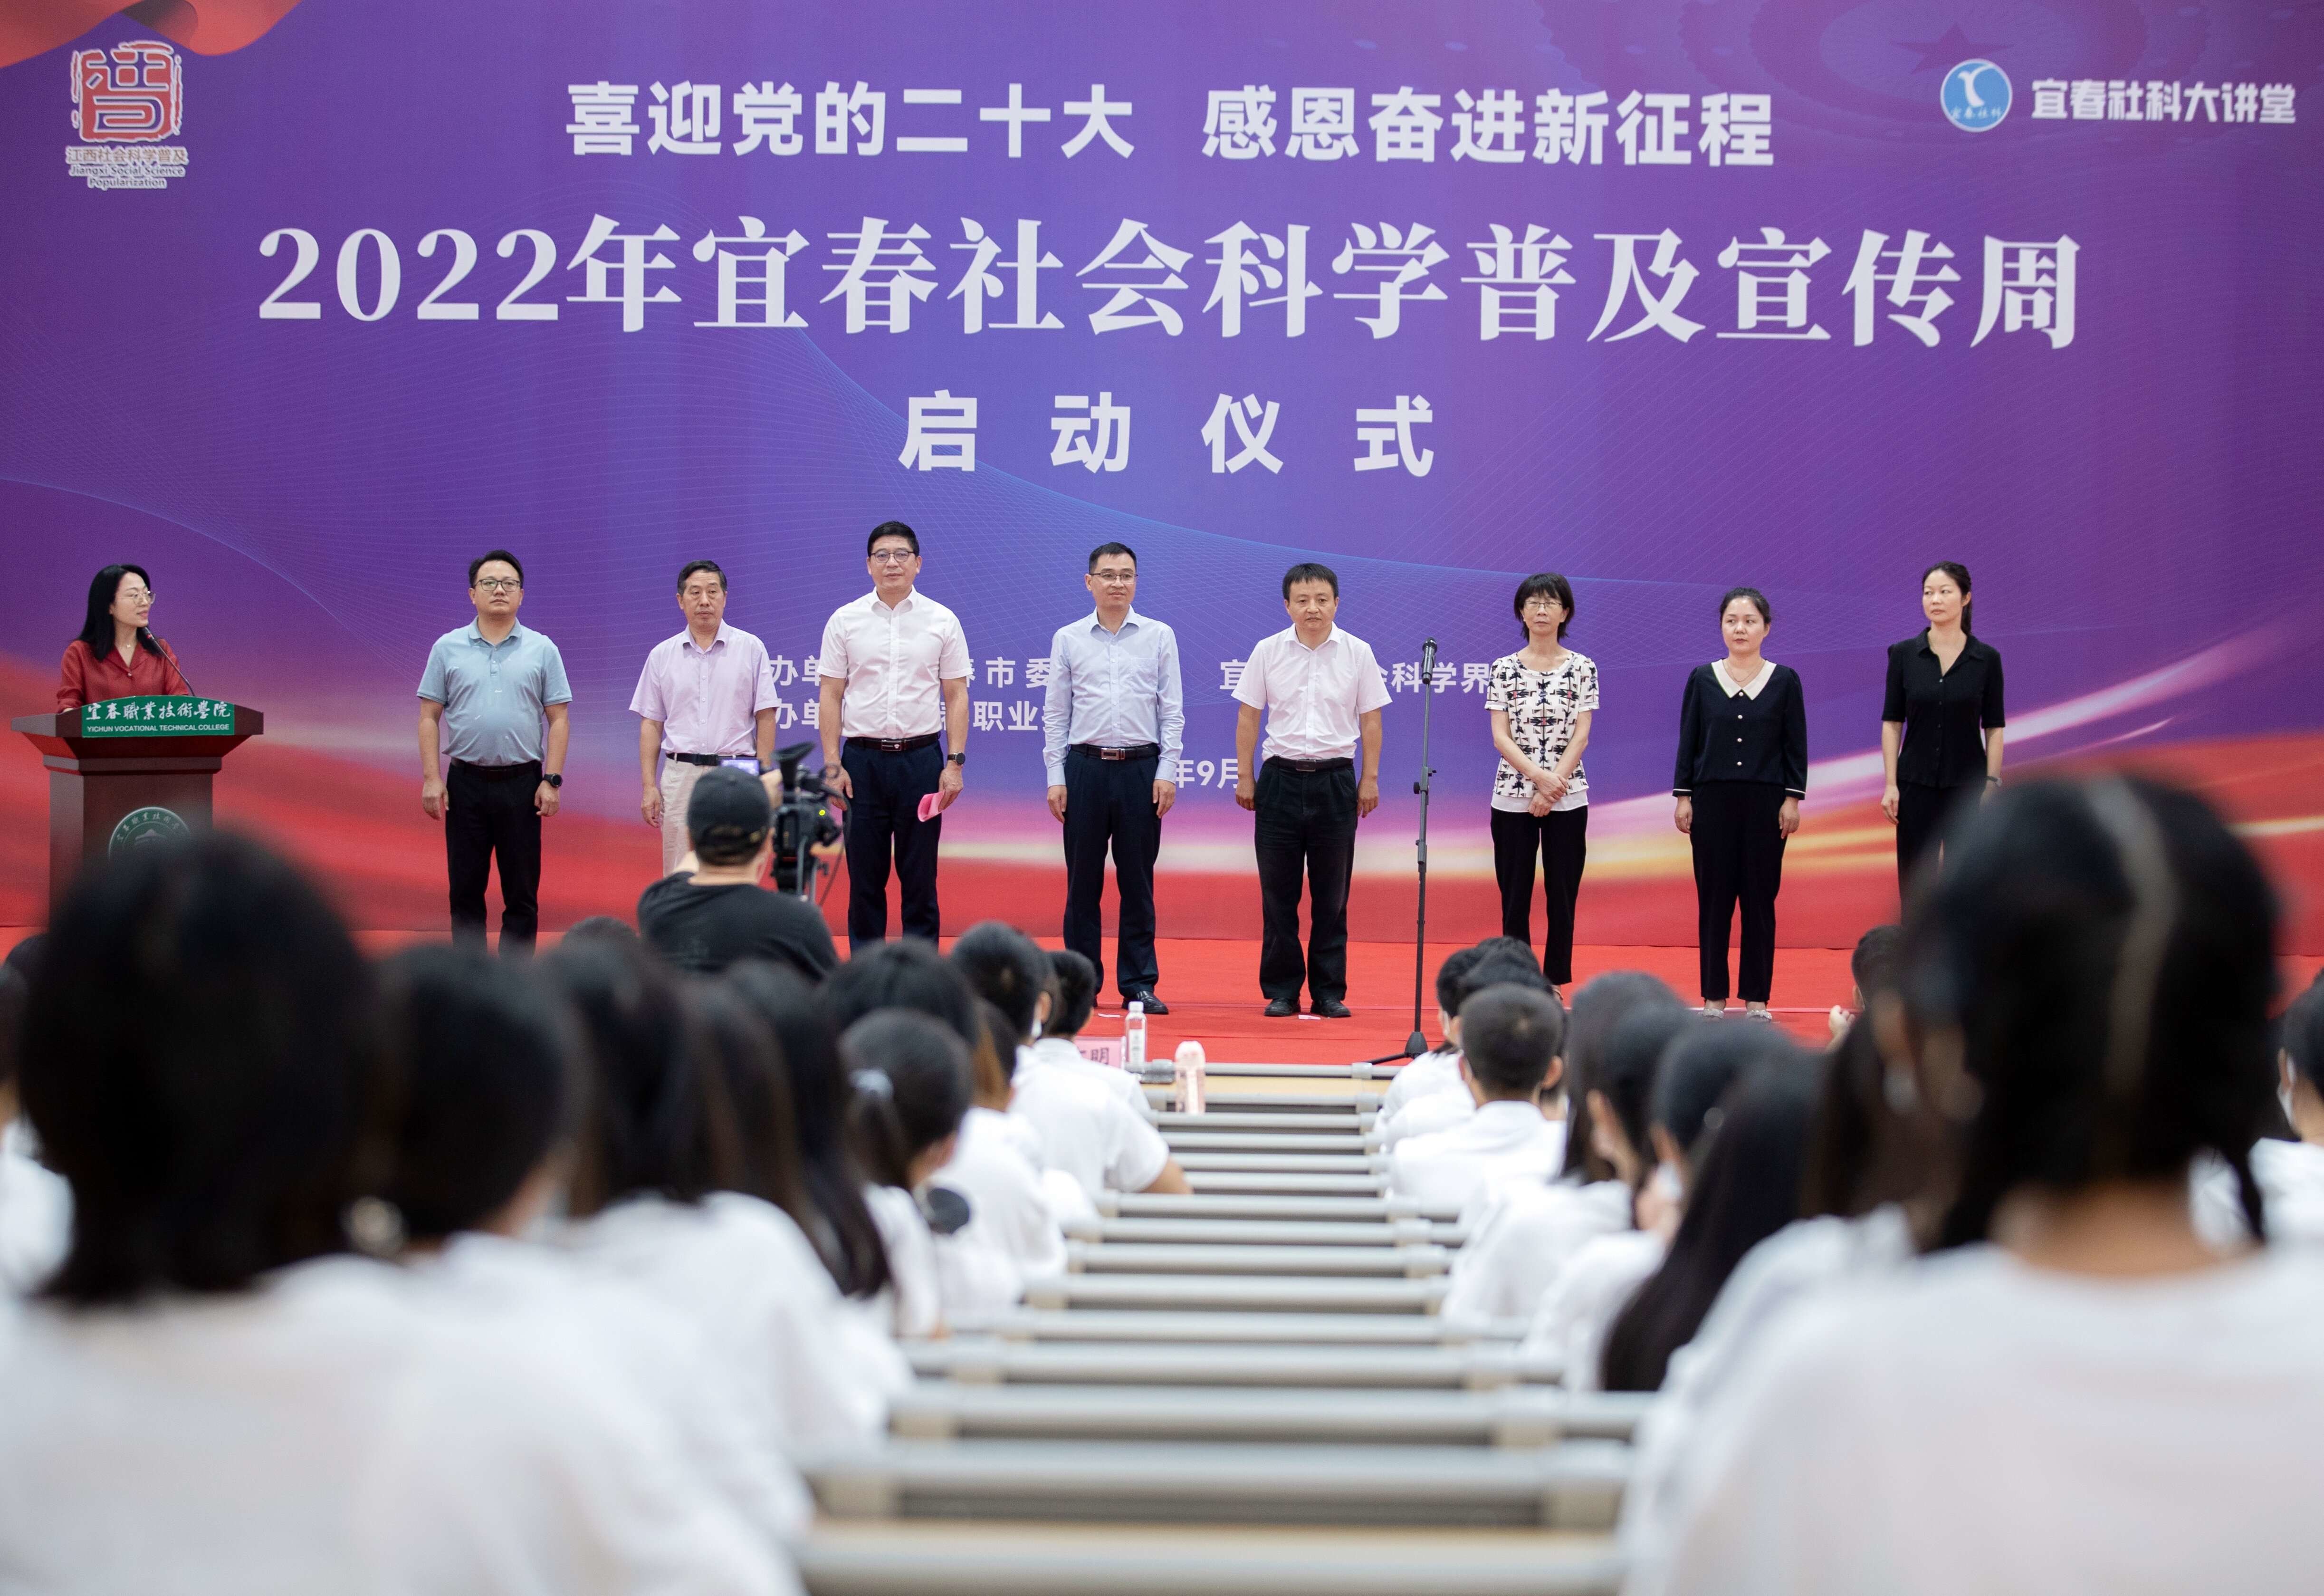 2022年宜春社会科学普及周活动在宜春职业技术学院启动